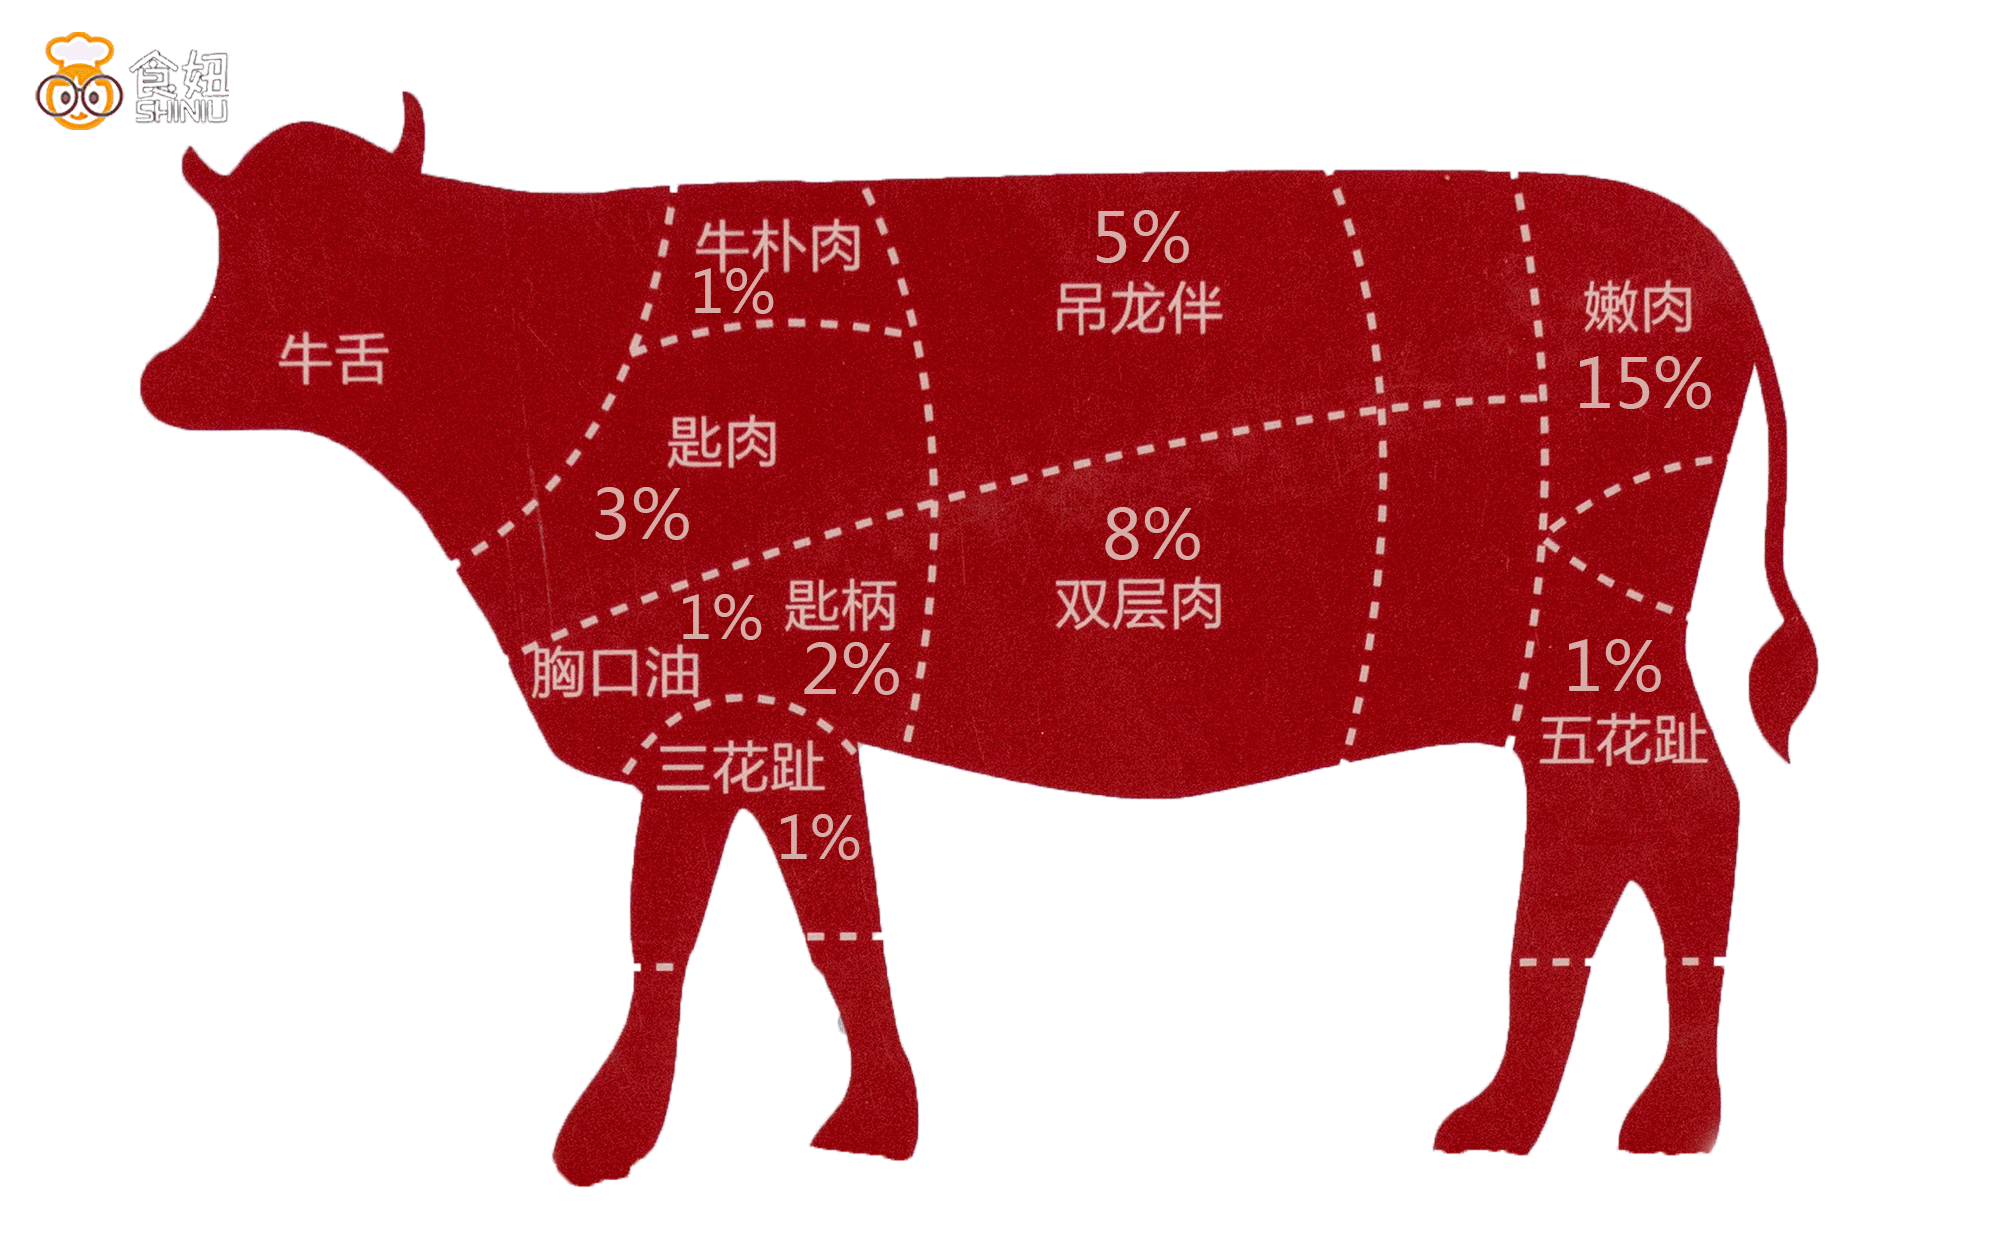 五花就是牛身上最精贵的部位,只占1%,是每个牛肉火锅店里最抢手的部分